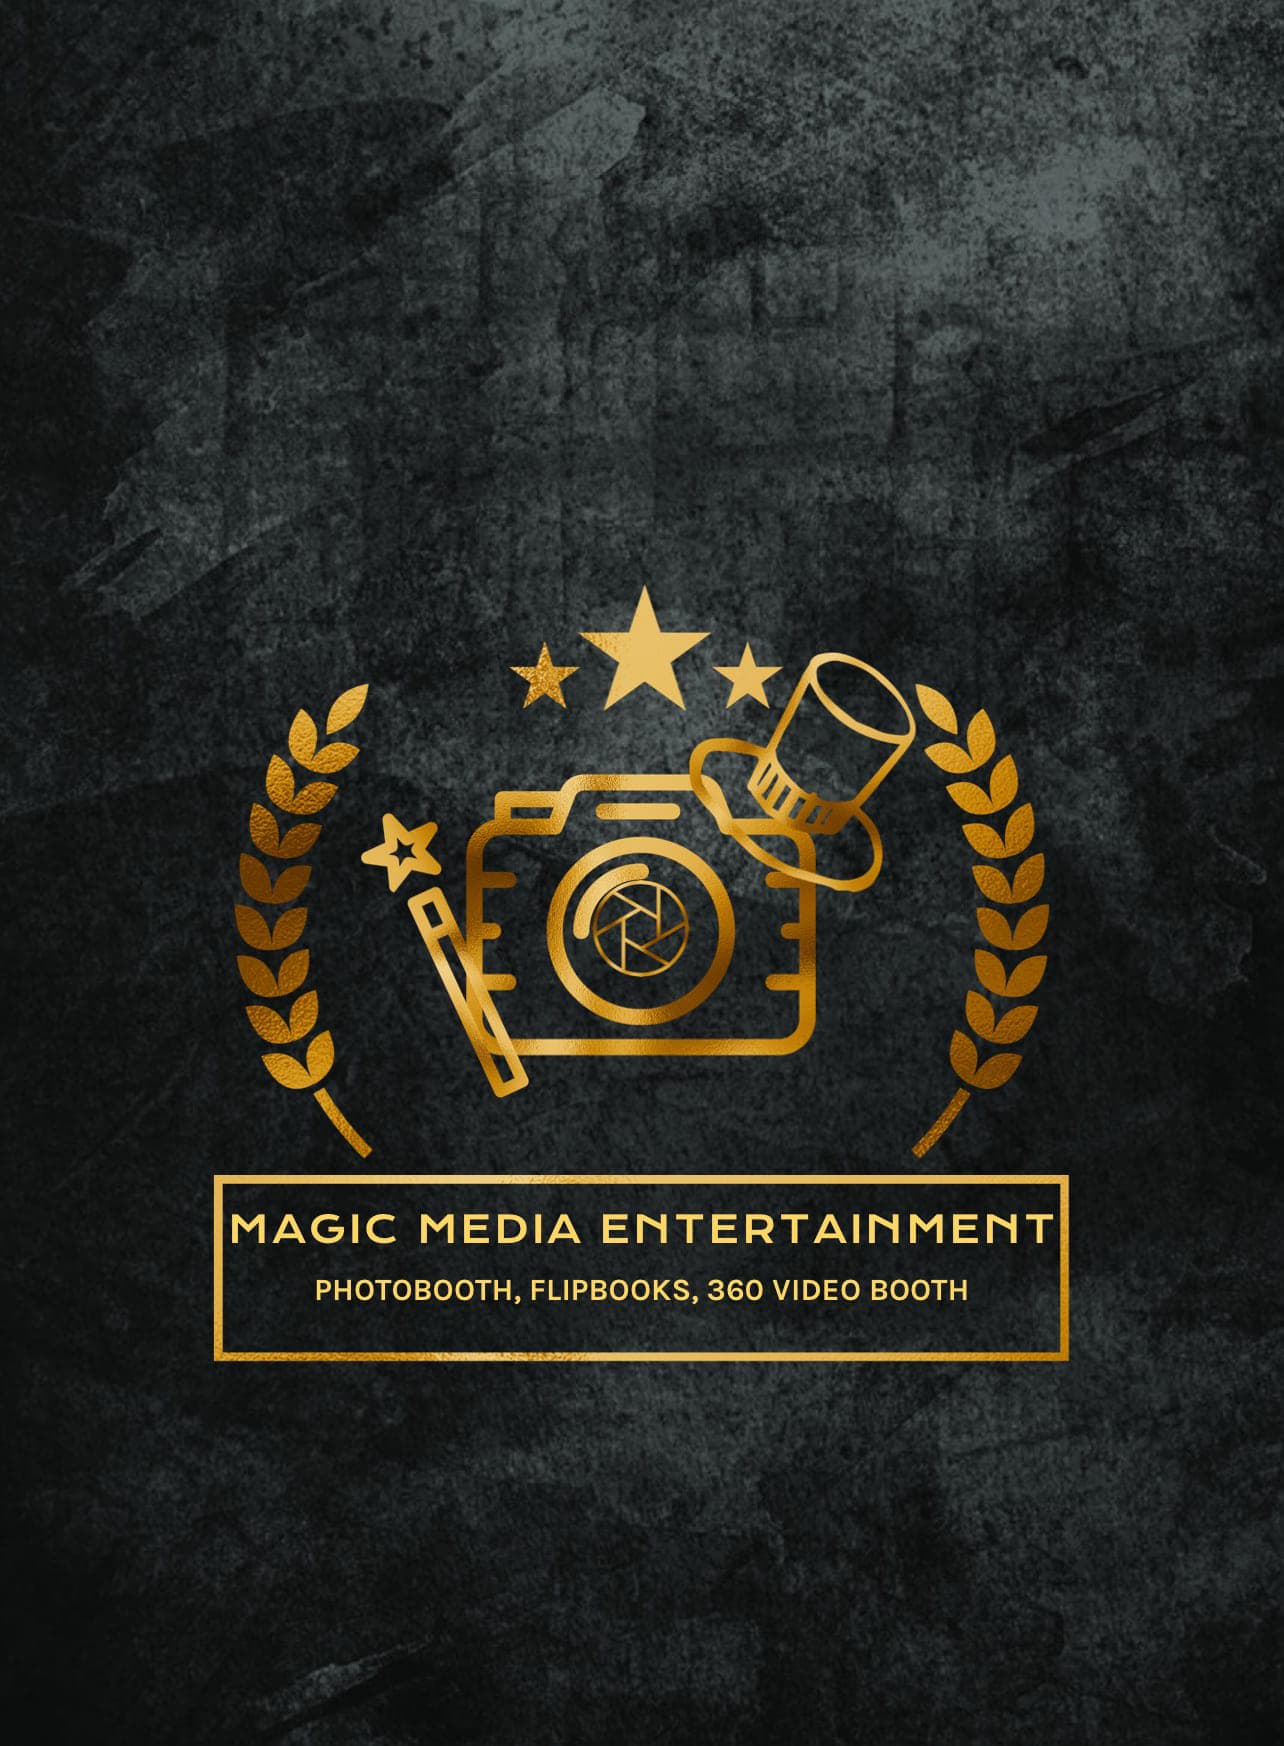 Magic Media Entertainment